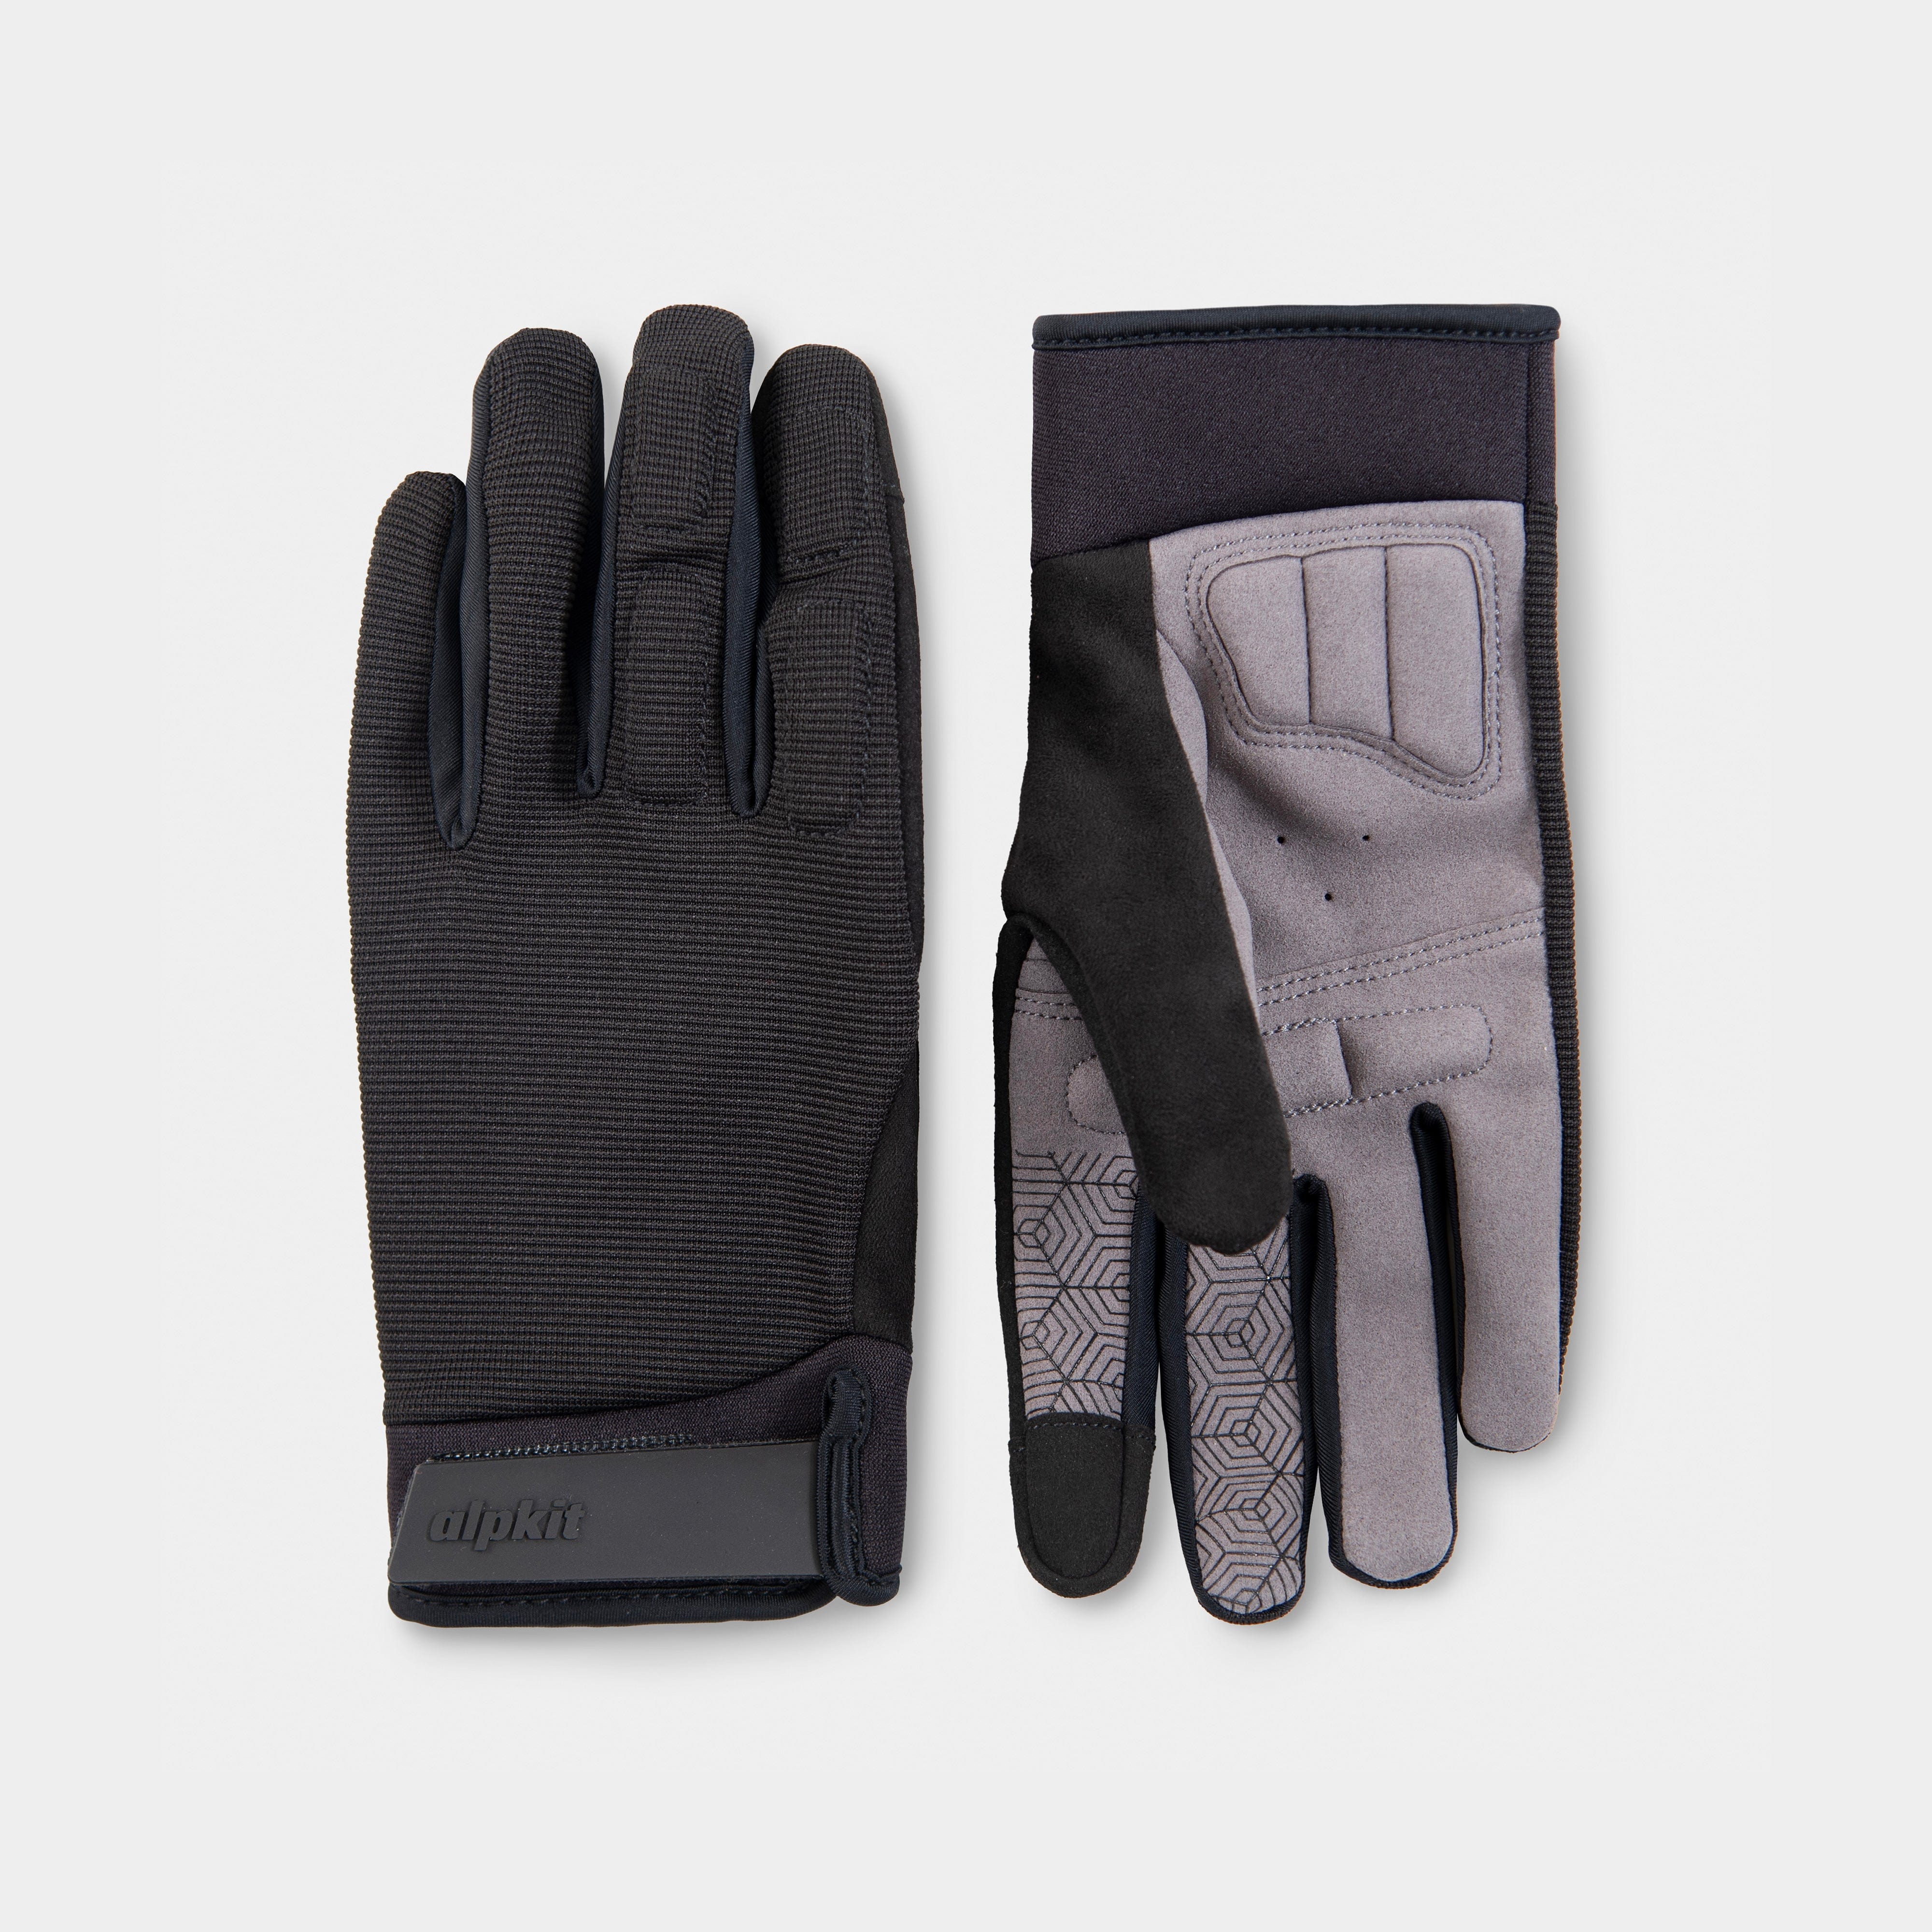 alpkit floe glove in black pair